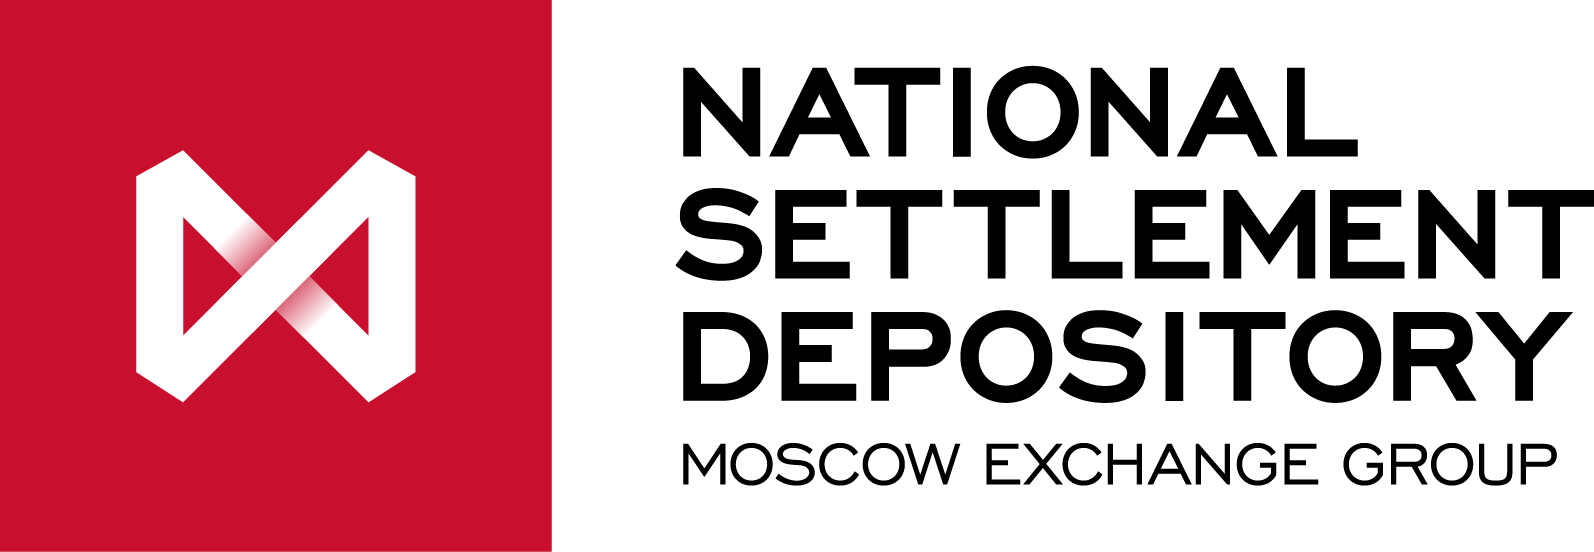 НРД логотип. Московская биржа логотип. Национальный расчетный депозитарий логотип. Национальный Клиринговый центр логотип. Нрд депозитарий